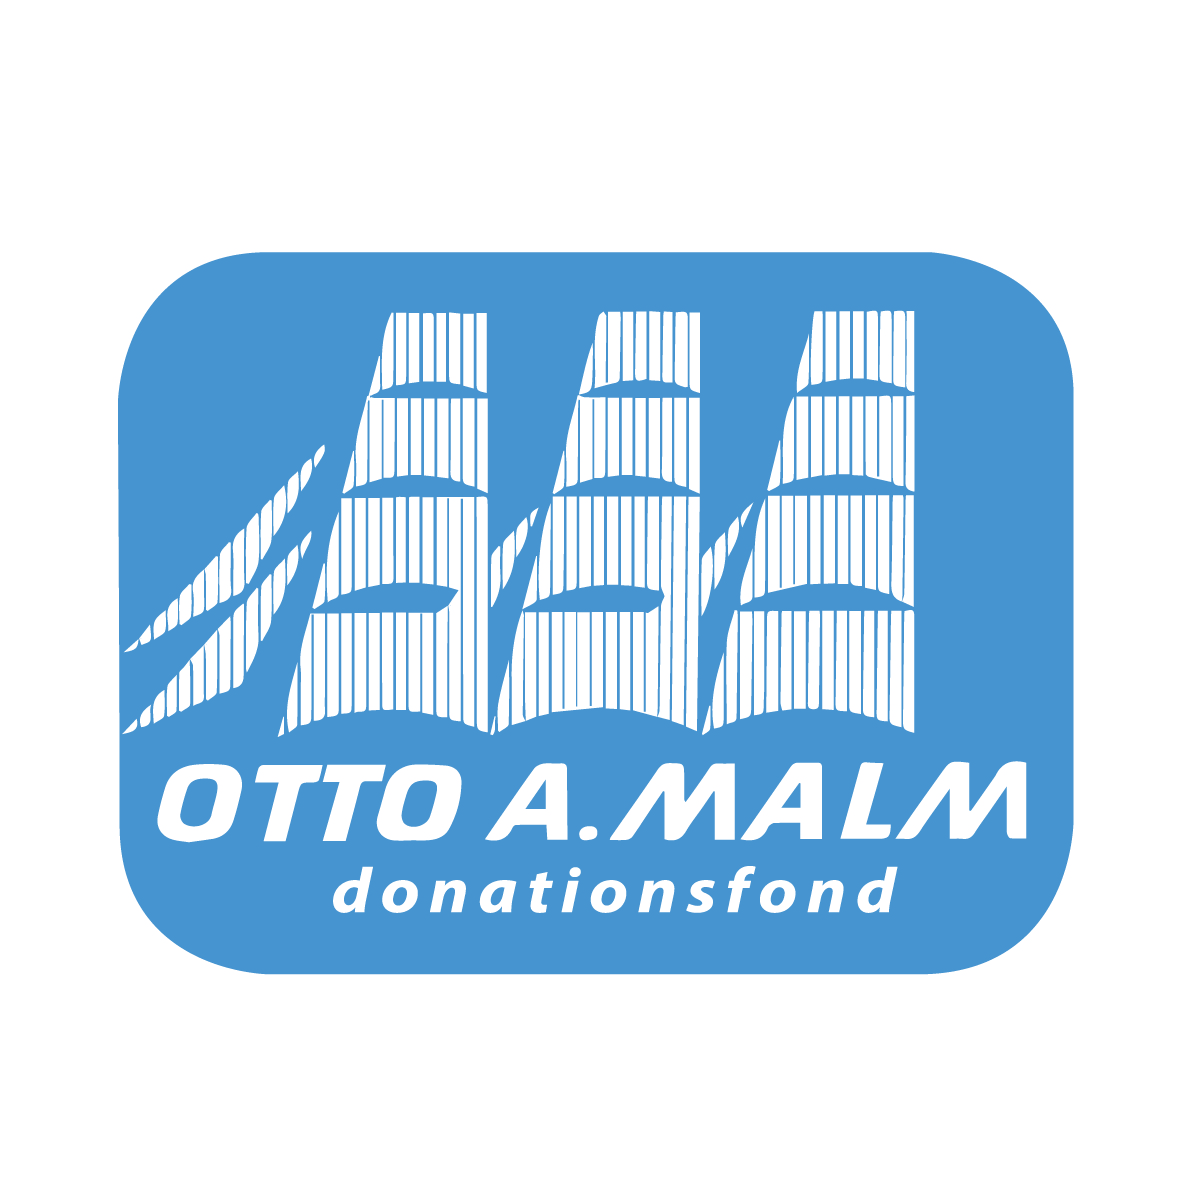 Otto A. Malm Donationsfond logo. Logon pohja on vaaleansininen ja päällä valkoisten purjeiden siluetit. Alla lukee valkoisilla isoilla kirjaimilla Otto A. Malm ja tämän alla lukee donationsfond.